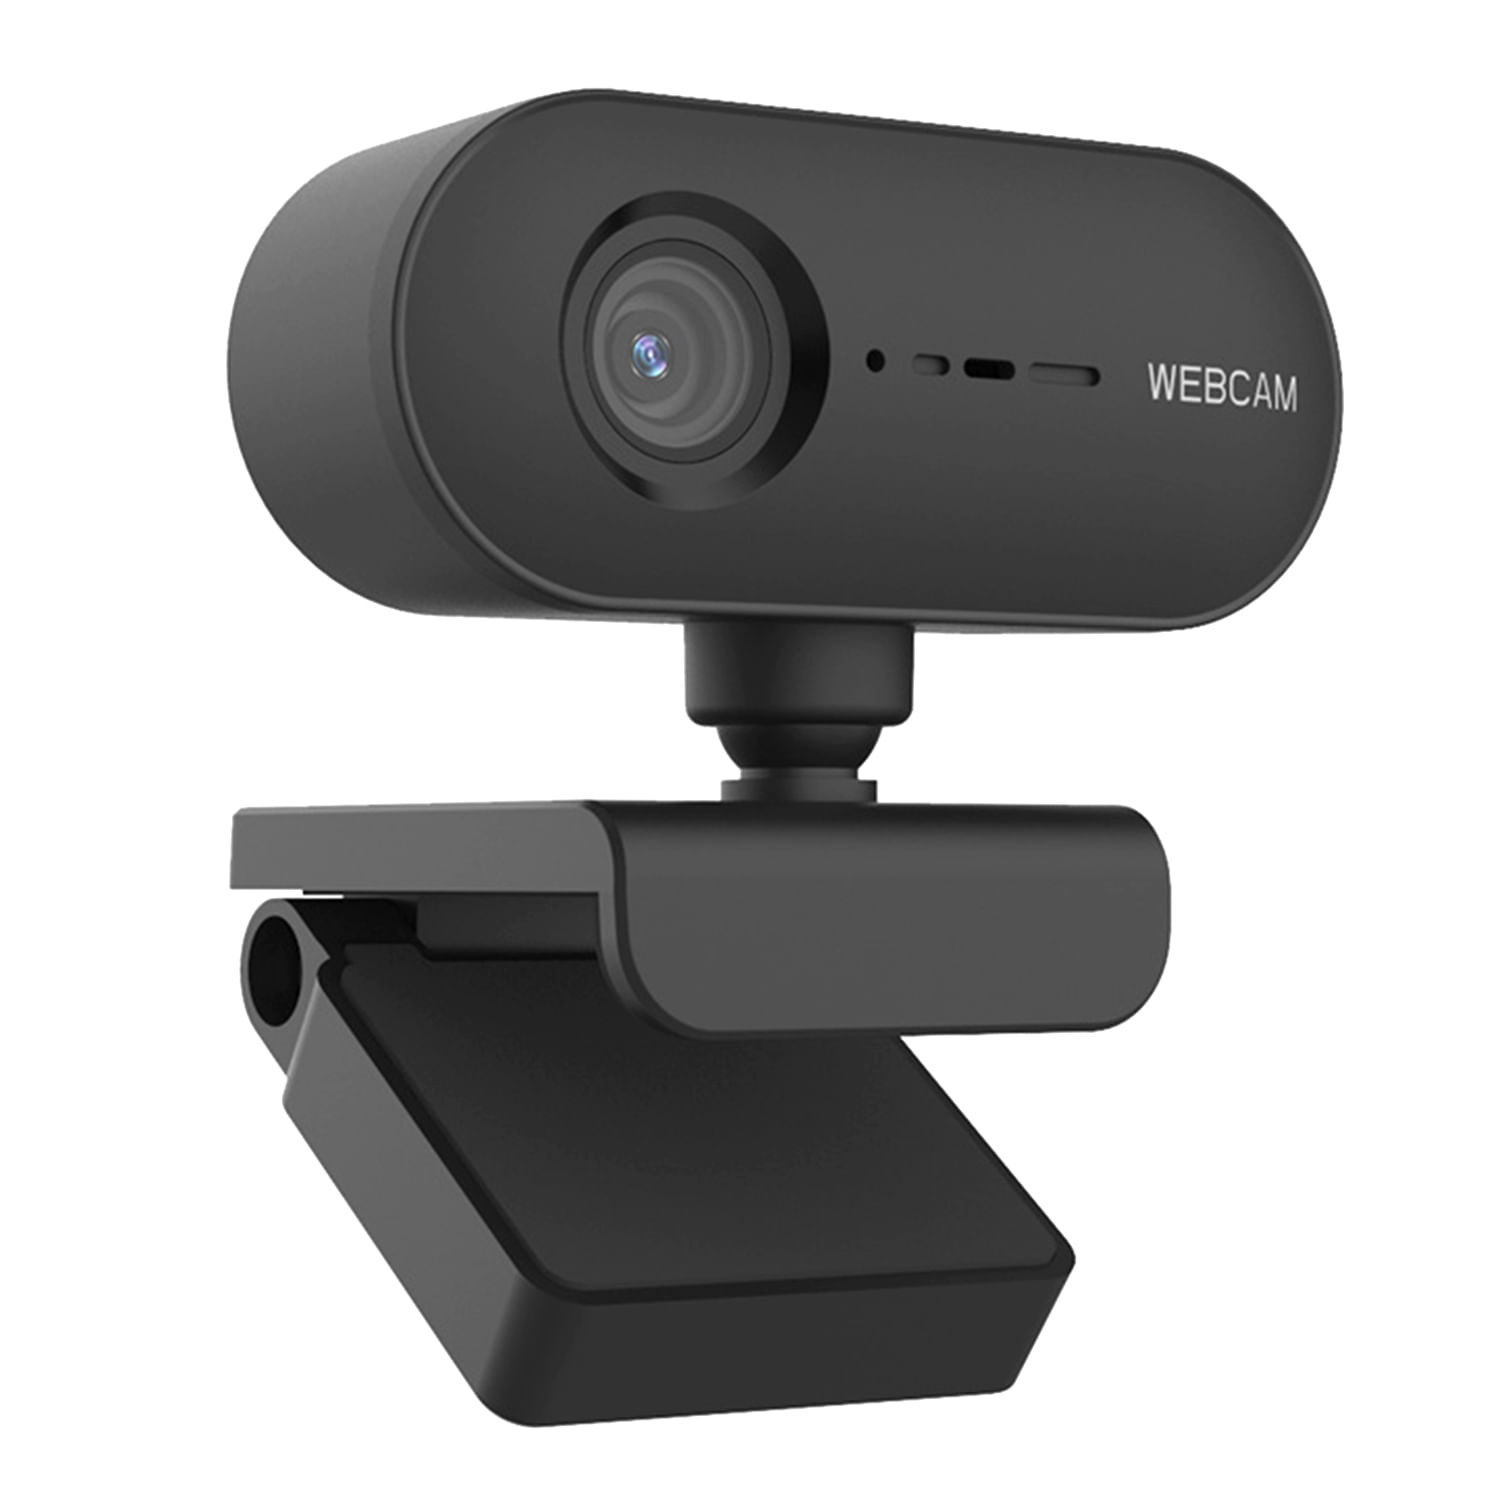 Cámara Webcam S&T W3 HD 1080P Auto Focus Micrófono C/Cancelación De Ruido USB 2.0